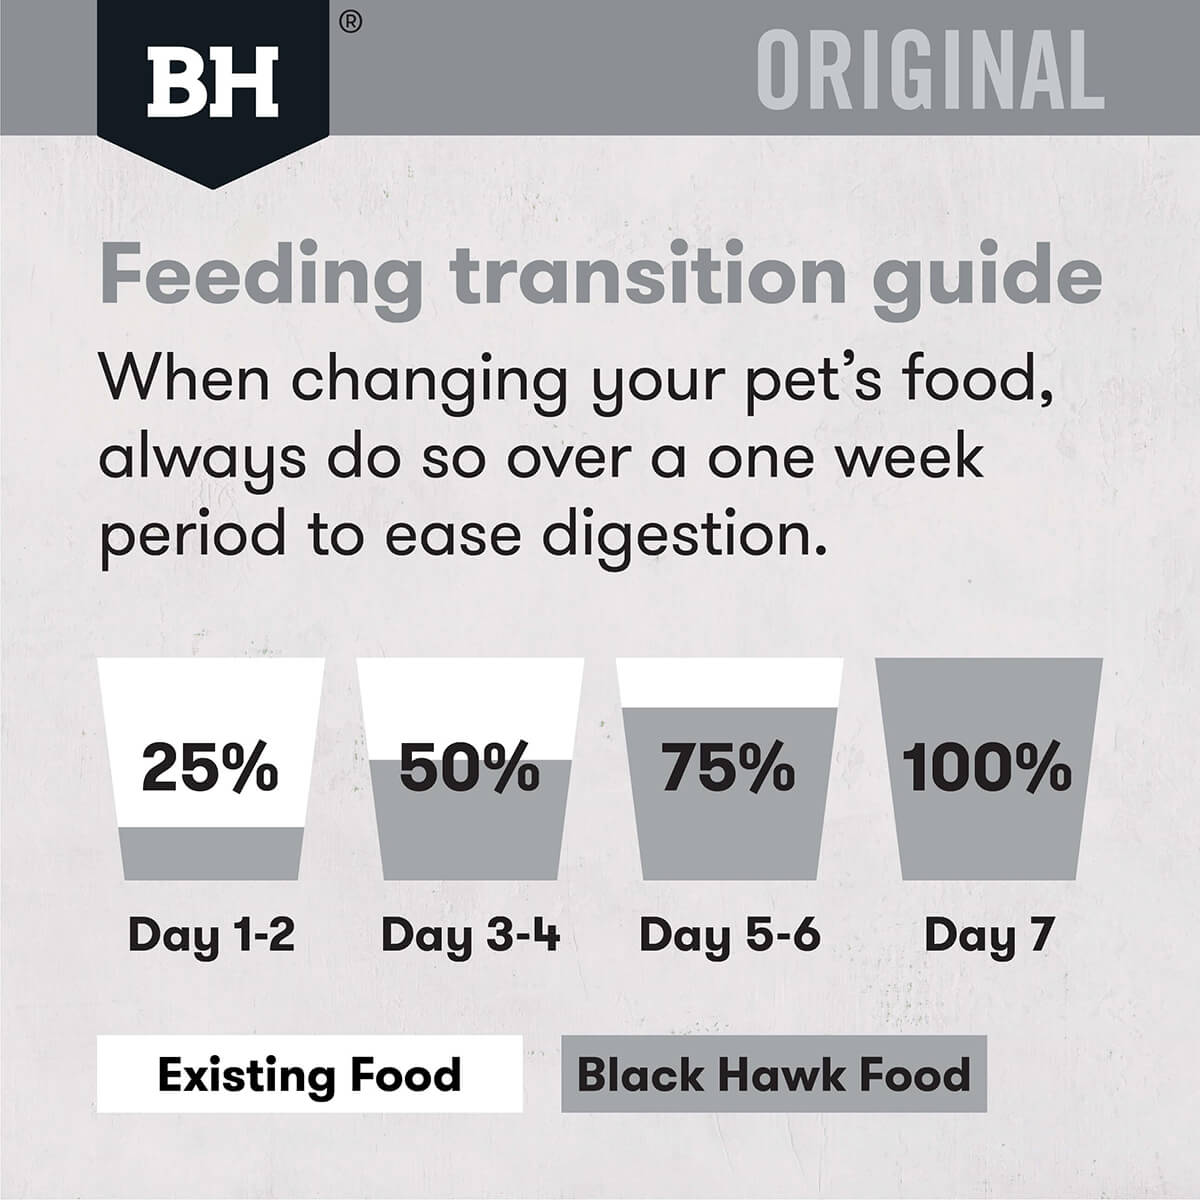 Black Hawk Small Breed Adult Lamb & Rice Dry Dog Food